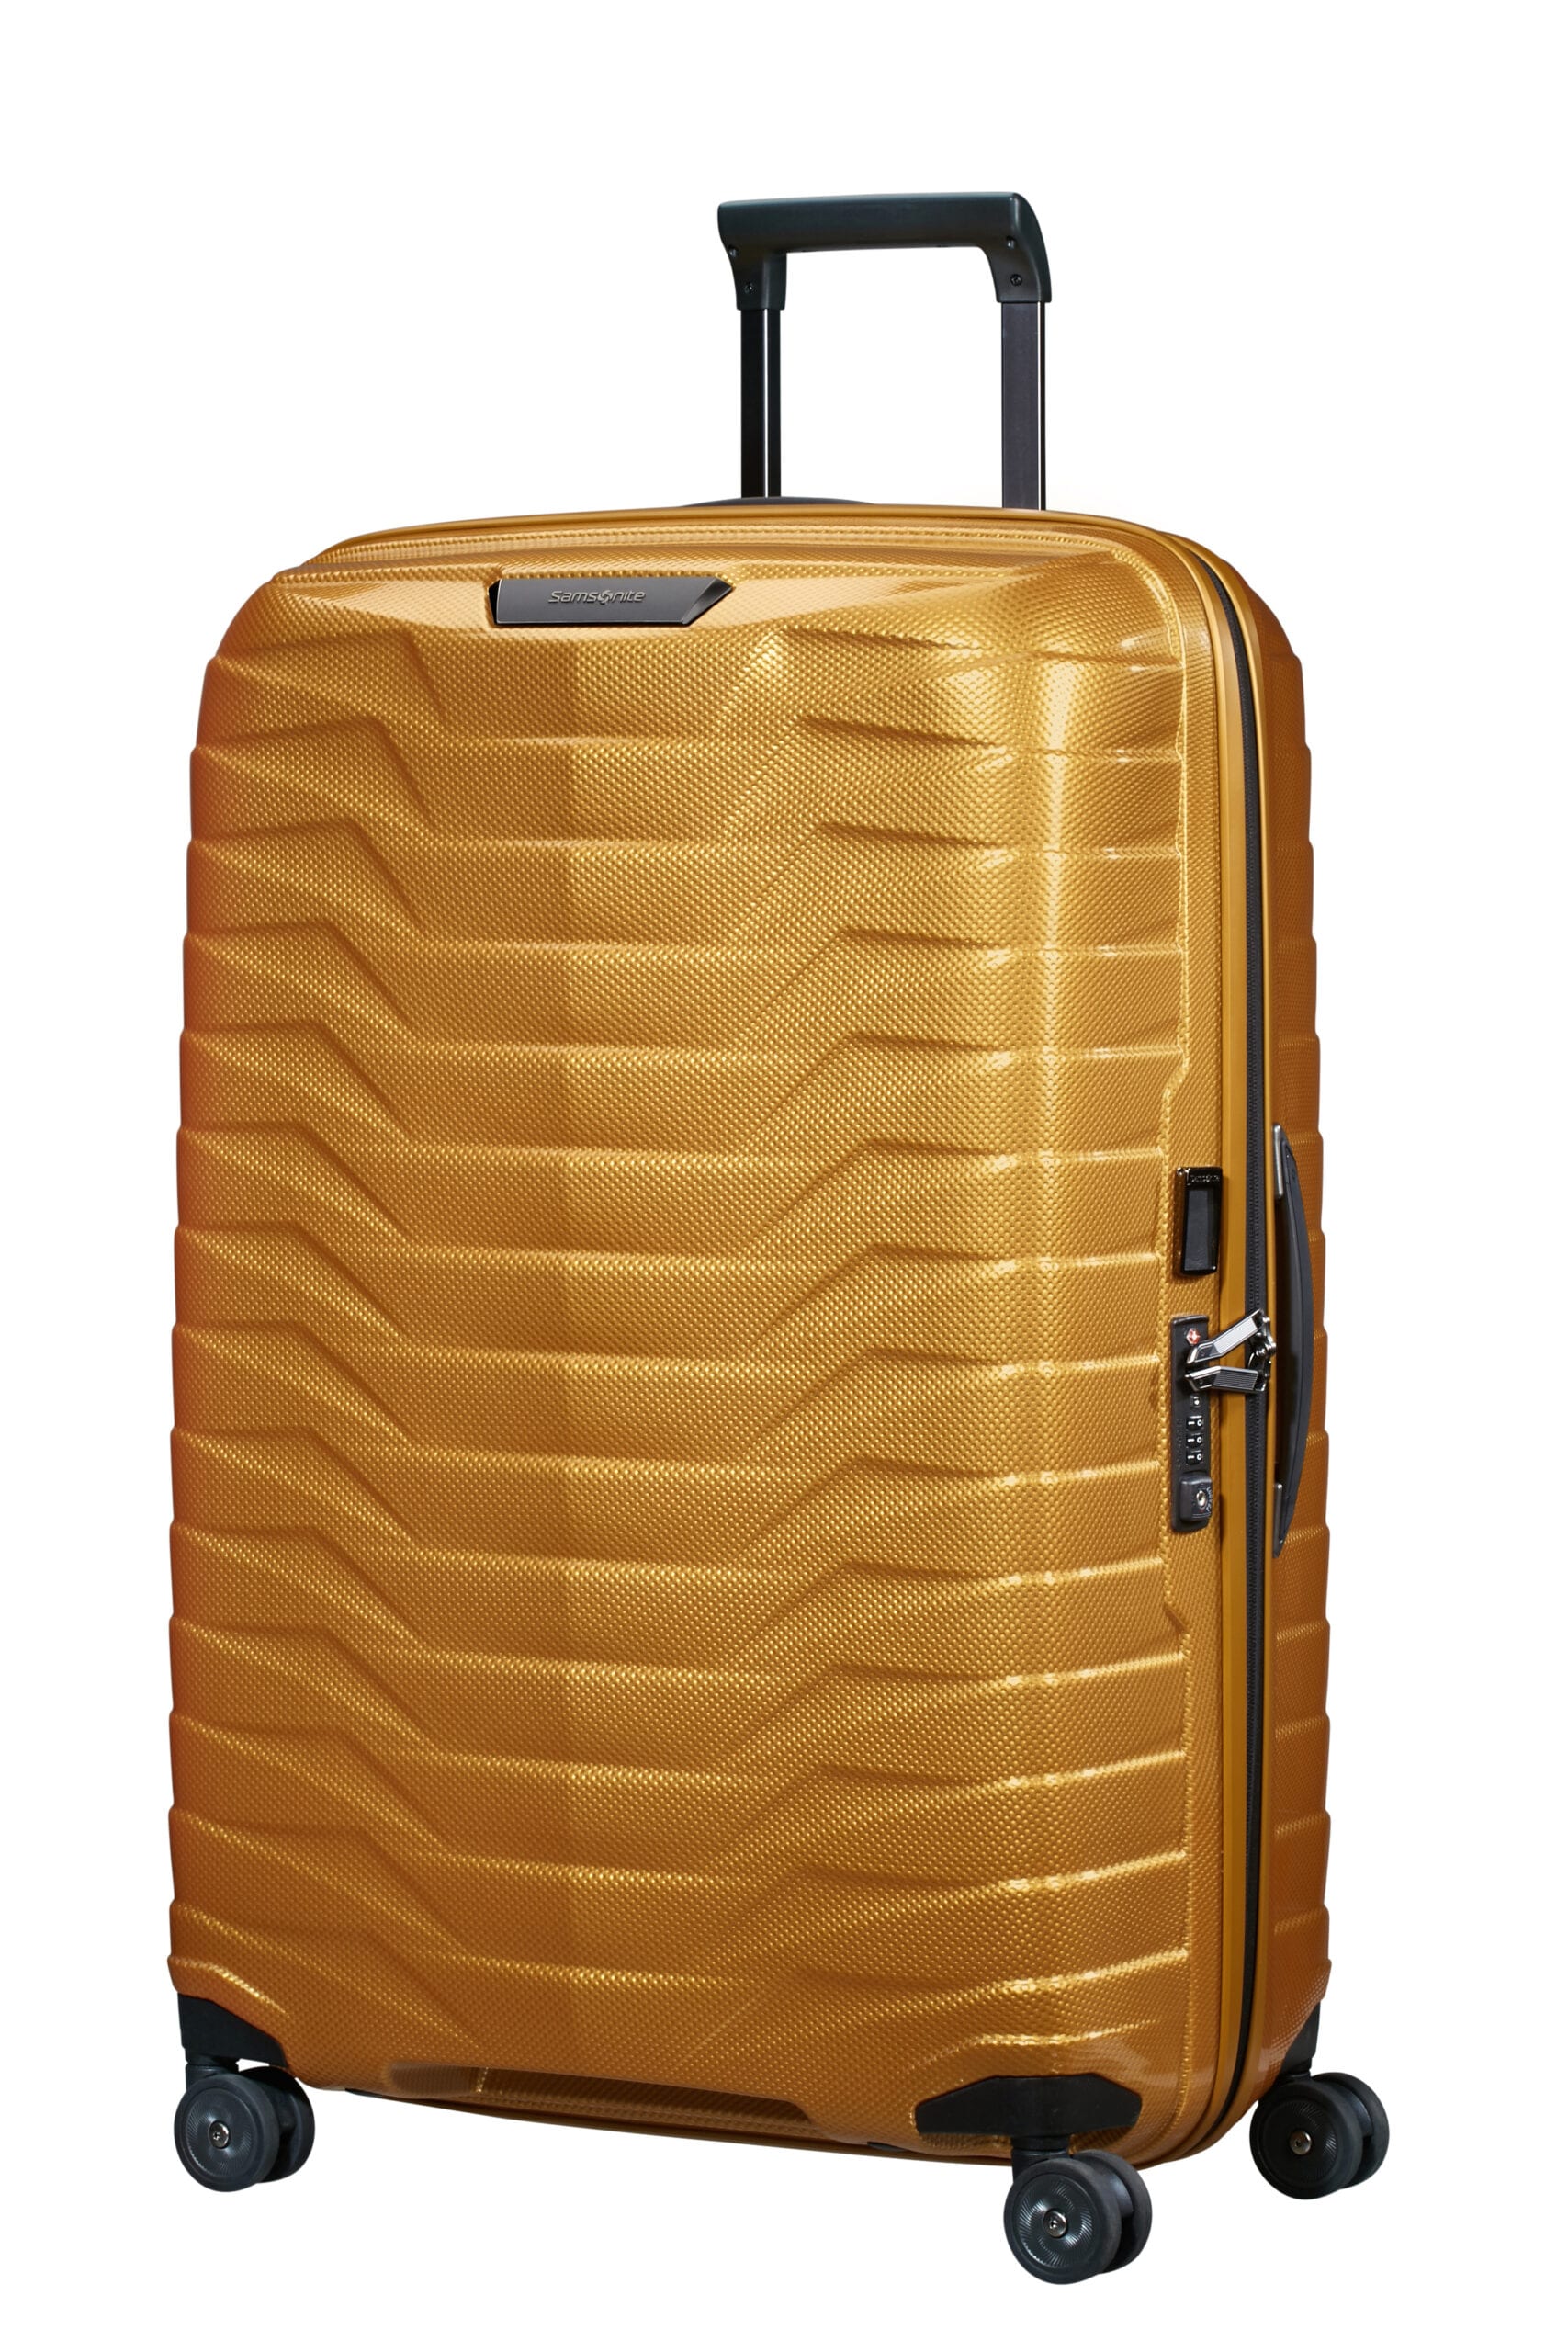 Laster Woestijn Oswald Samsonite Proxis Spinner 75 cm Honey Gold | Goodwalt Bags & Cases